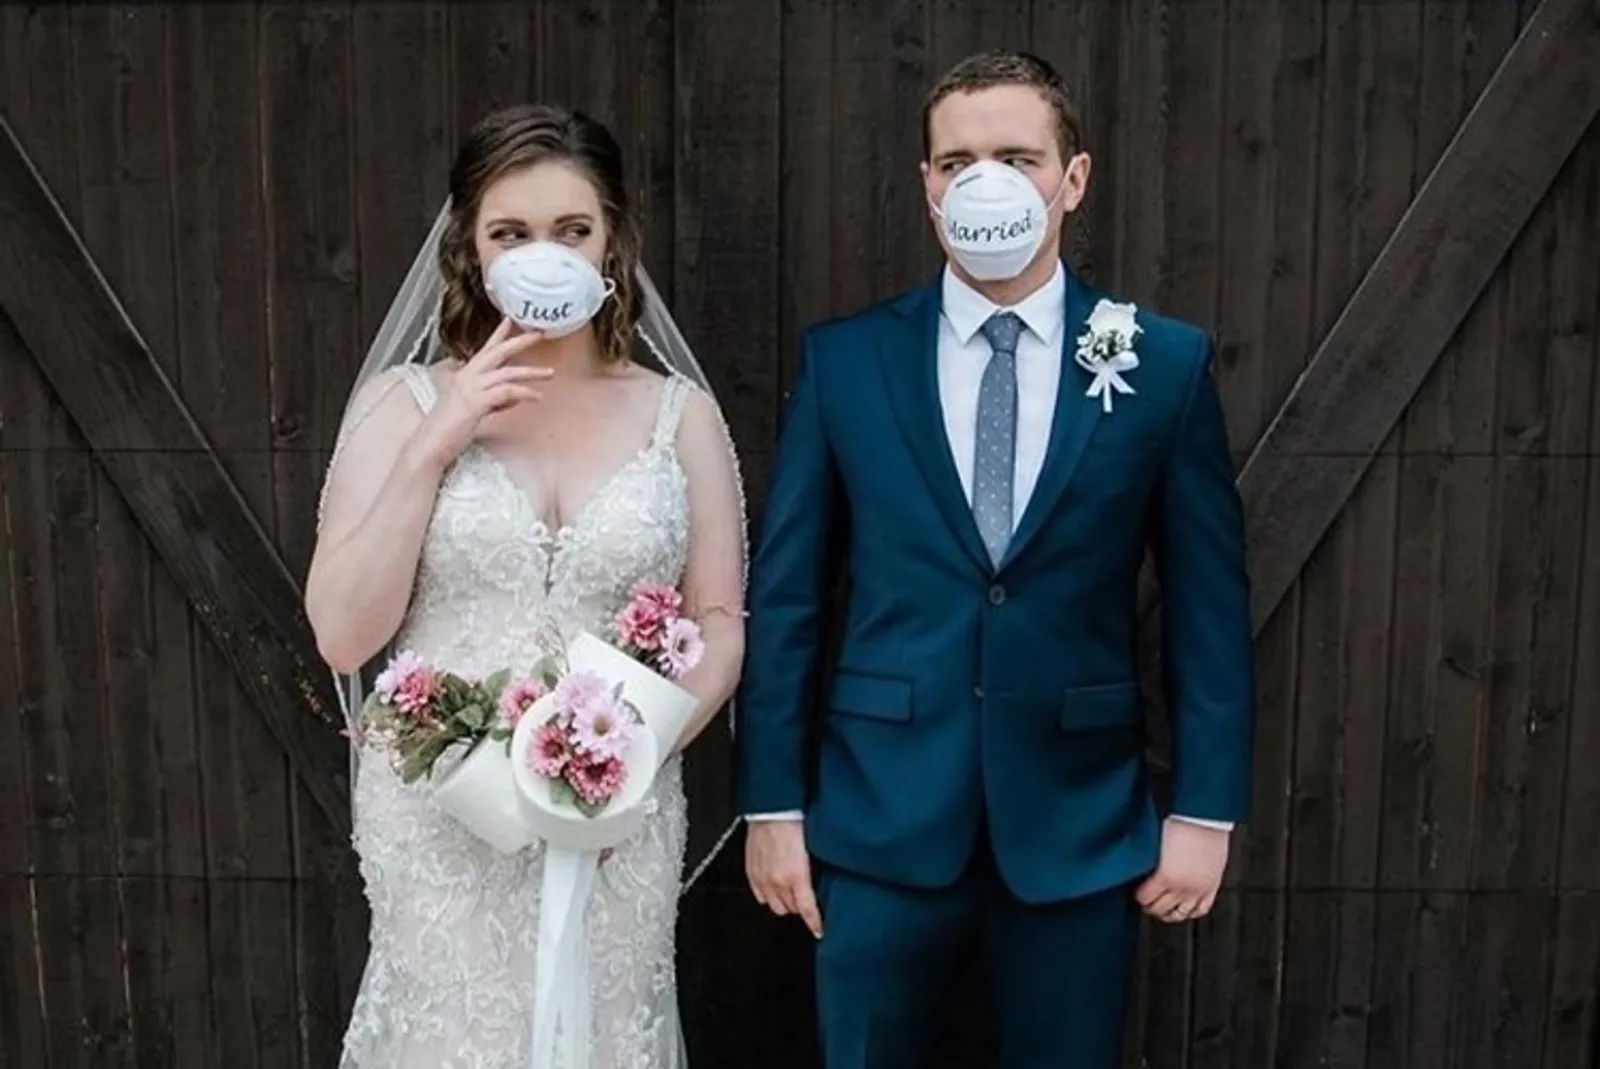 Ubah Rencana Akibat Pandemi, 10 Momen Pernikahan Ini Tetap Romantis